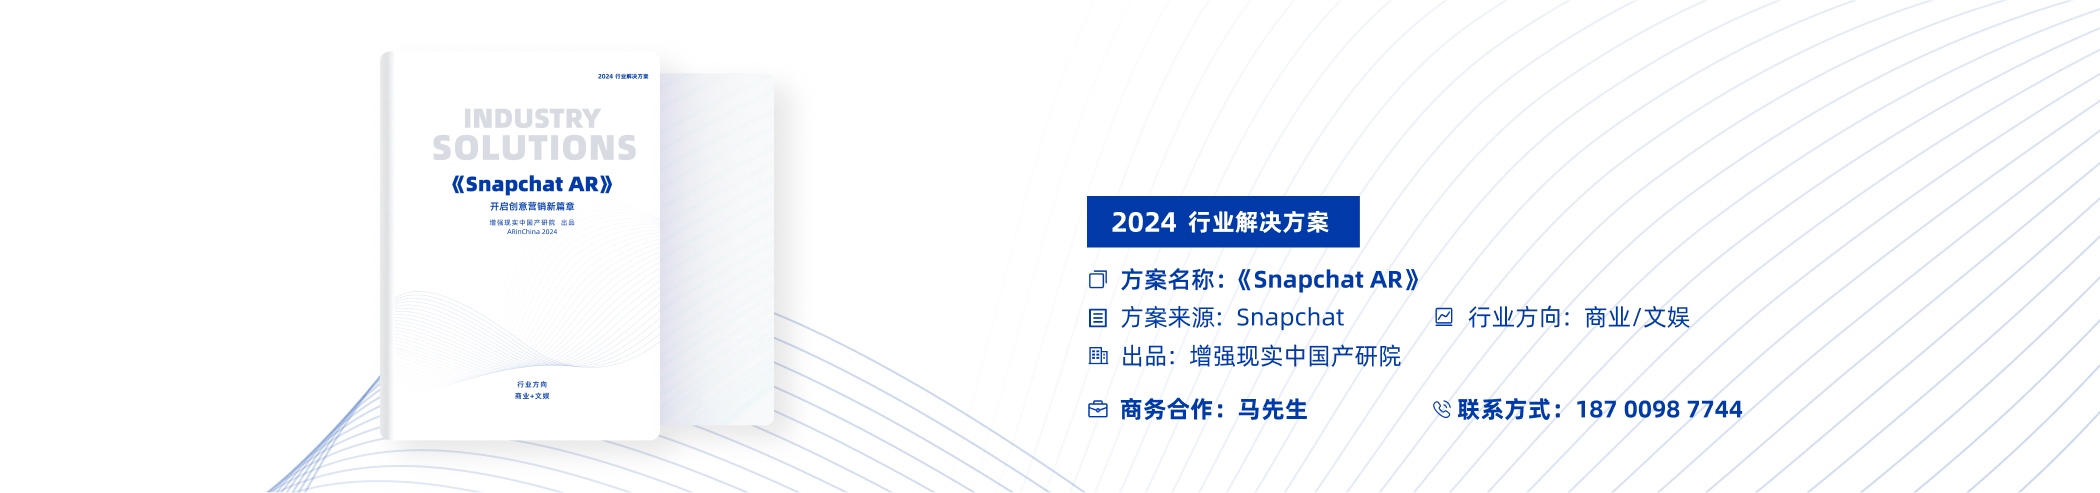 ARinChina2023元宇宙年度荣誉榜——商业价值潜力榜单